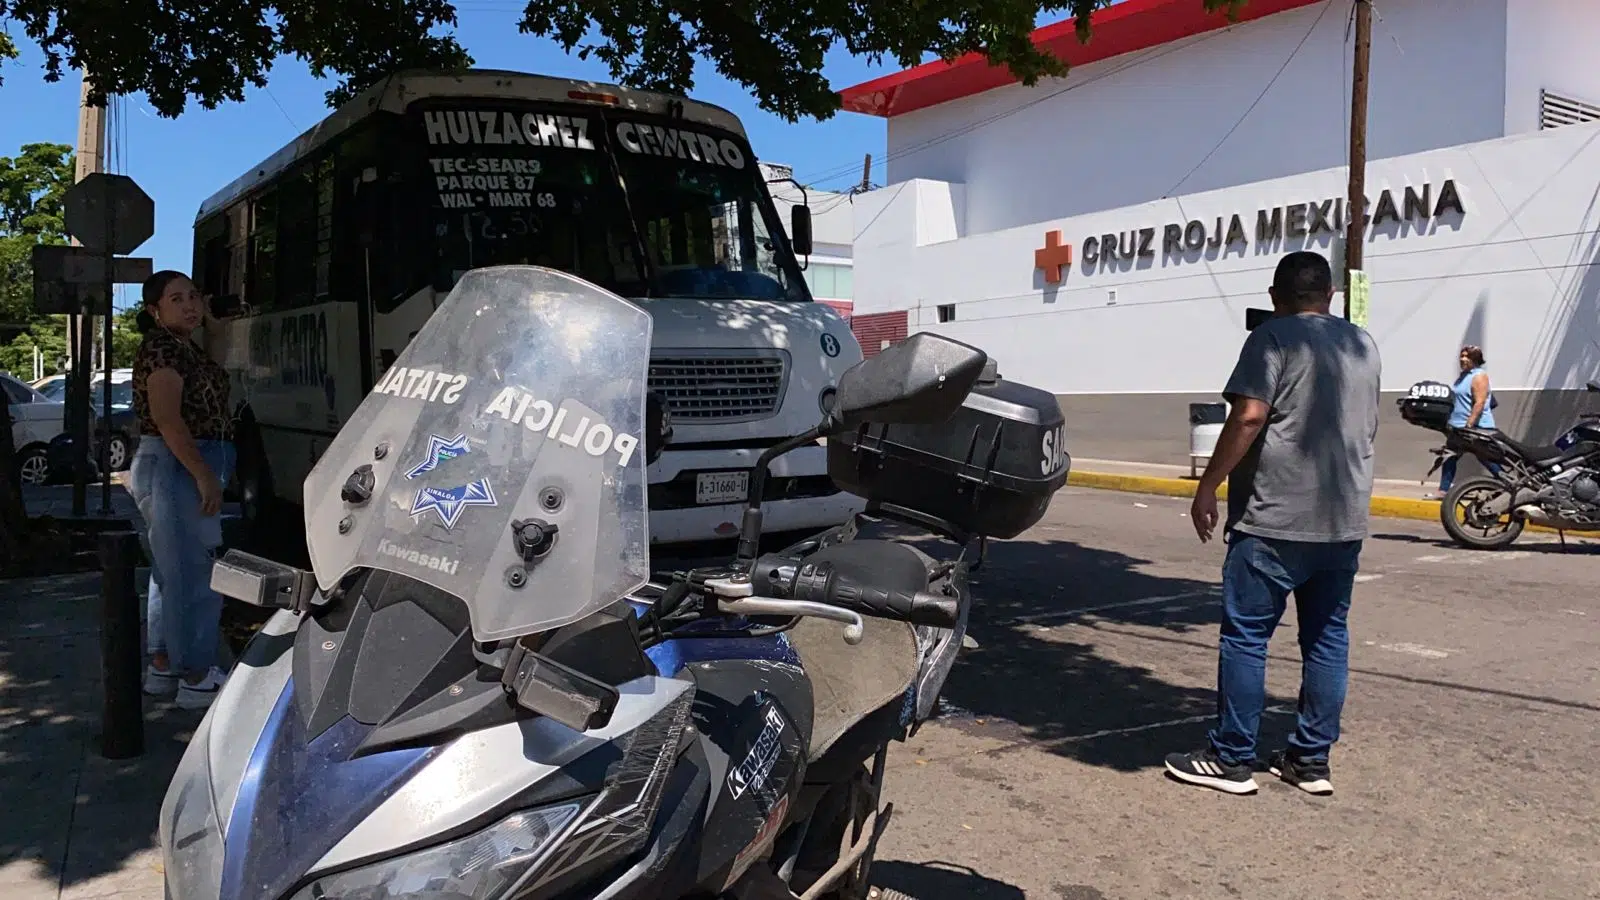 ÚLTIMA HORA: Atacan a balazos camión urbano en Culiacán; reportan dos personas heridas, incluida una niña